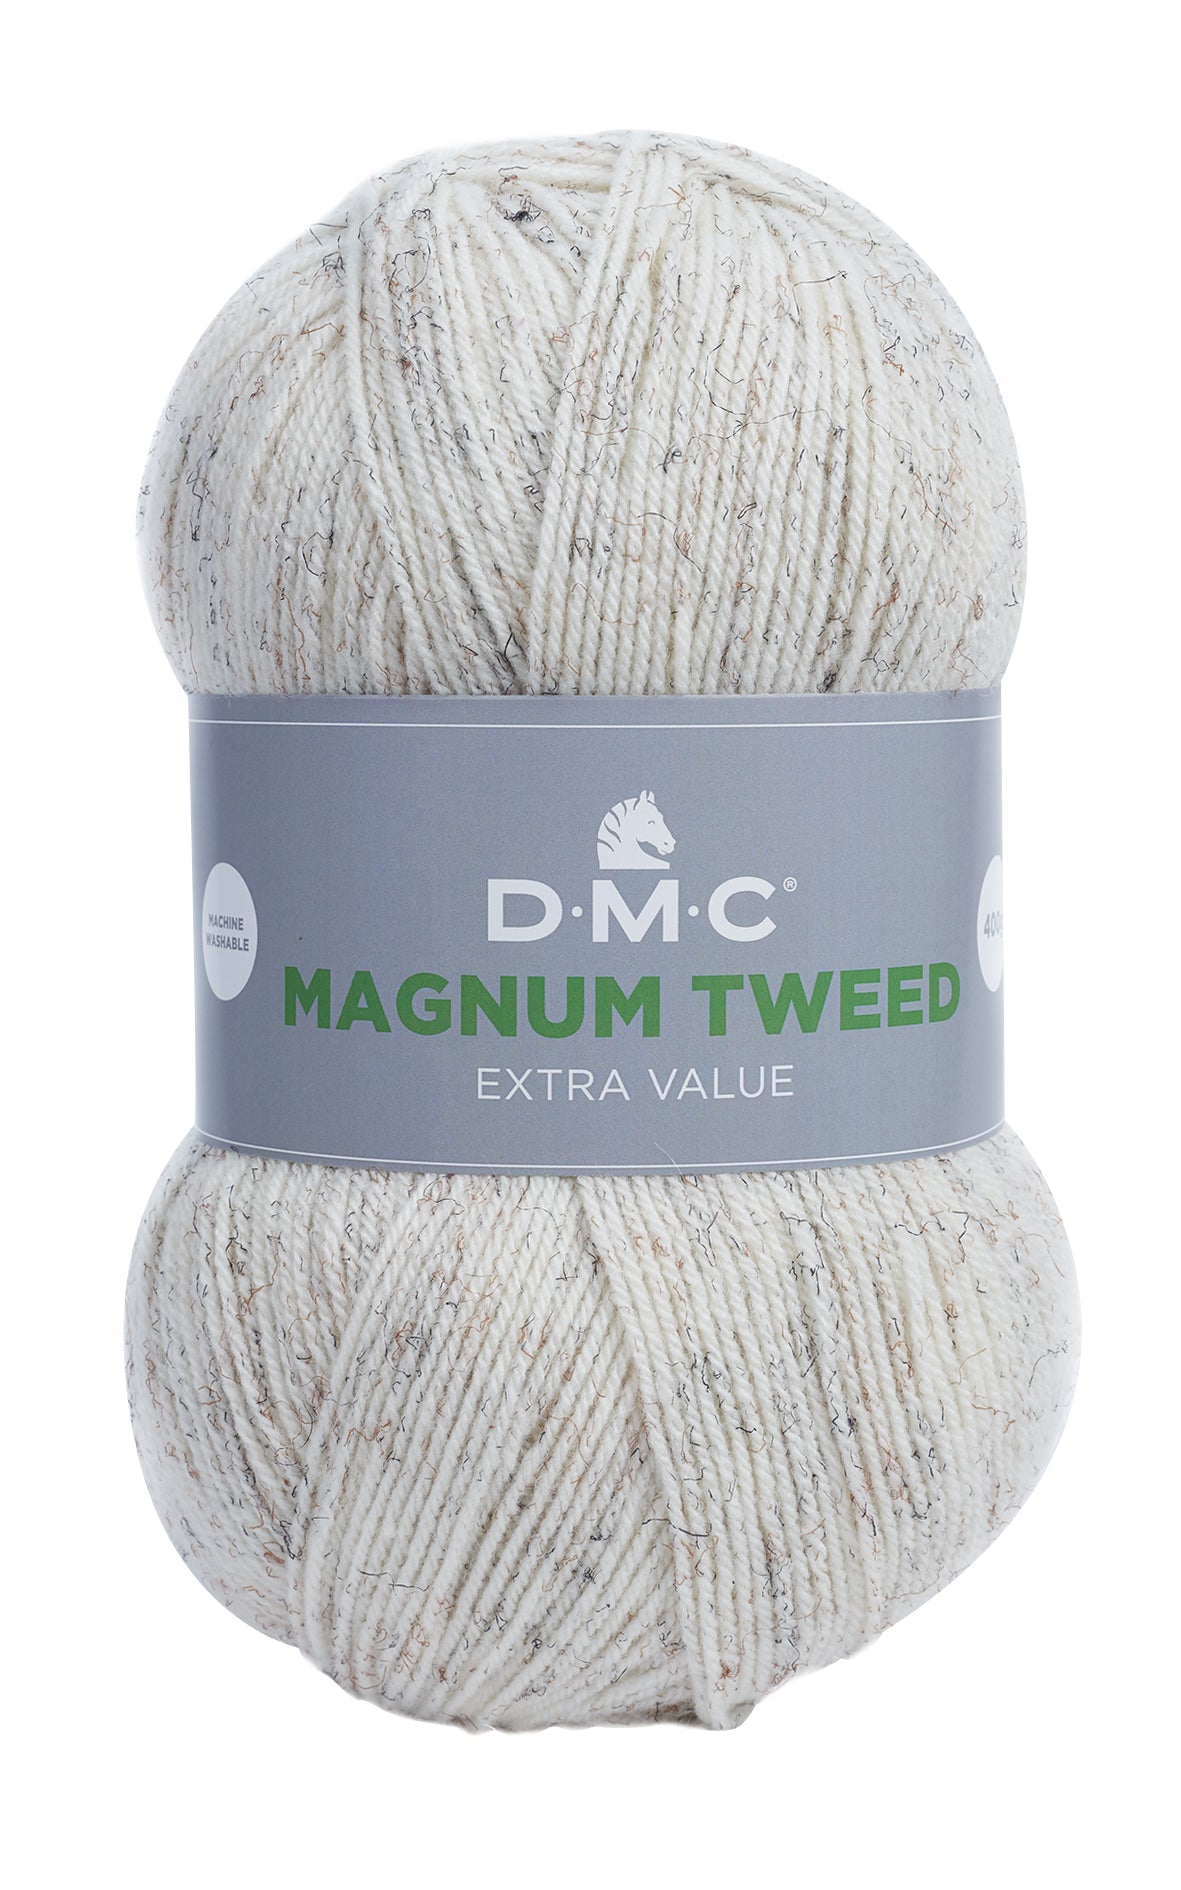 Lana Dmc Magnum Tweed Colore 930